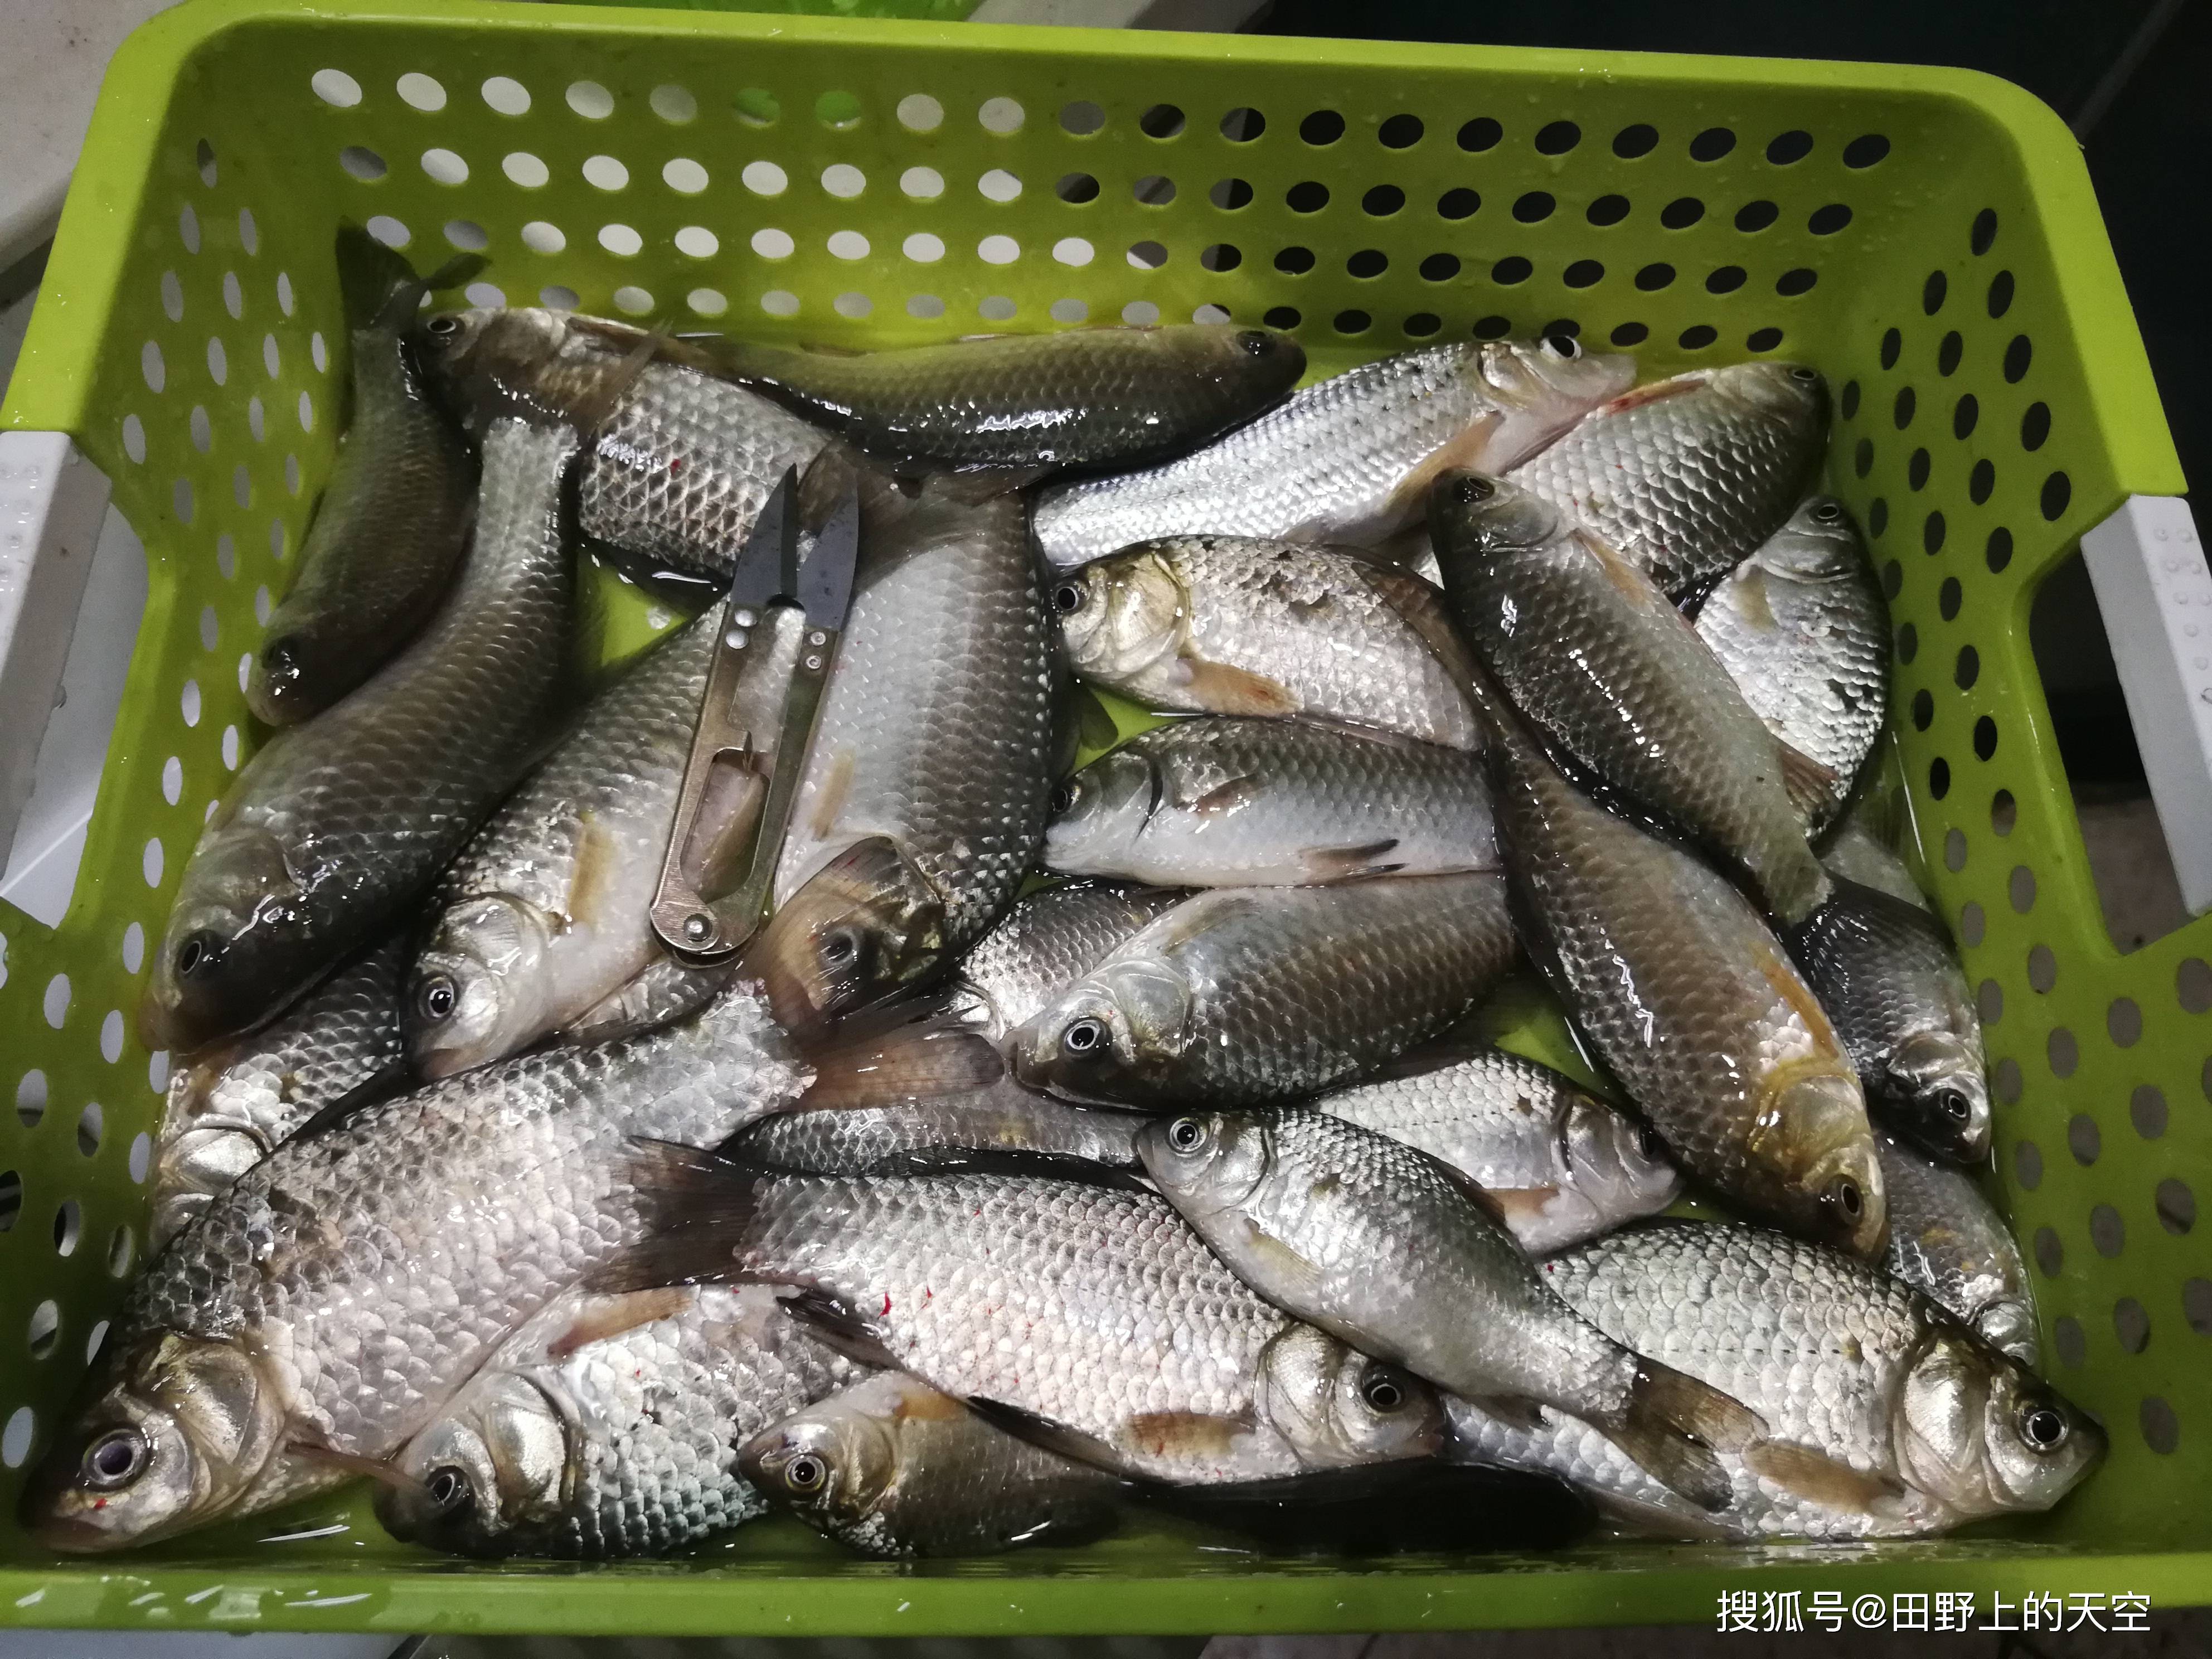 在郑州都哪些地方可以钓鱼